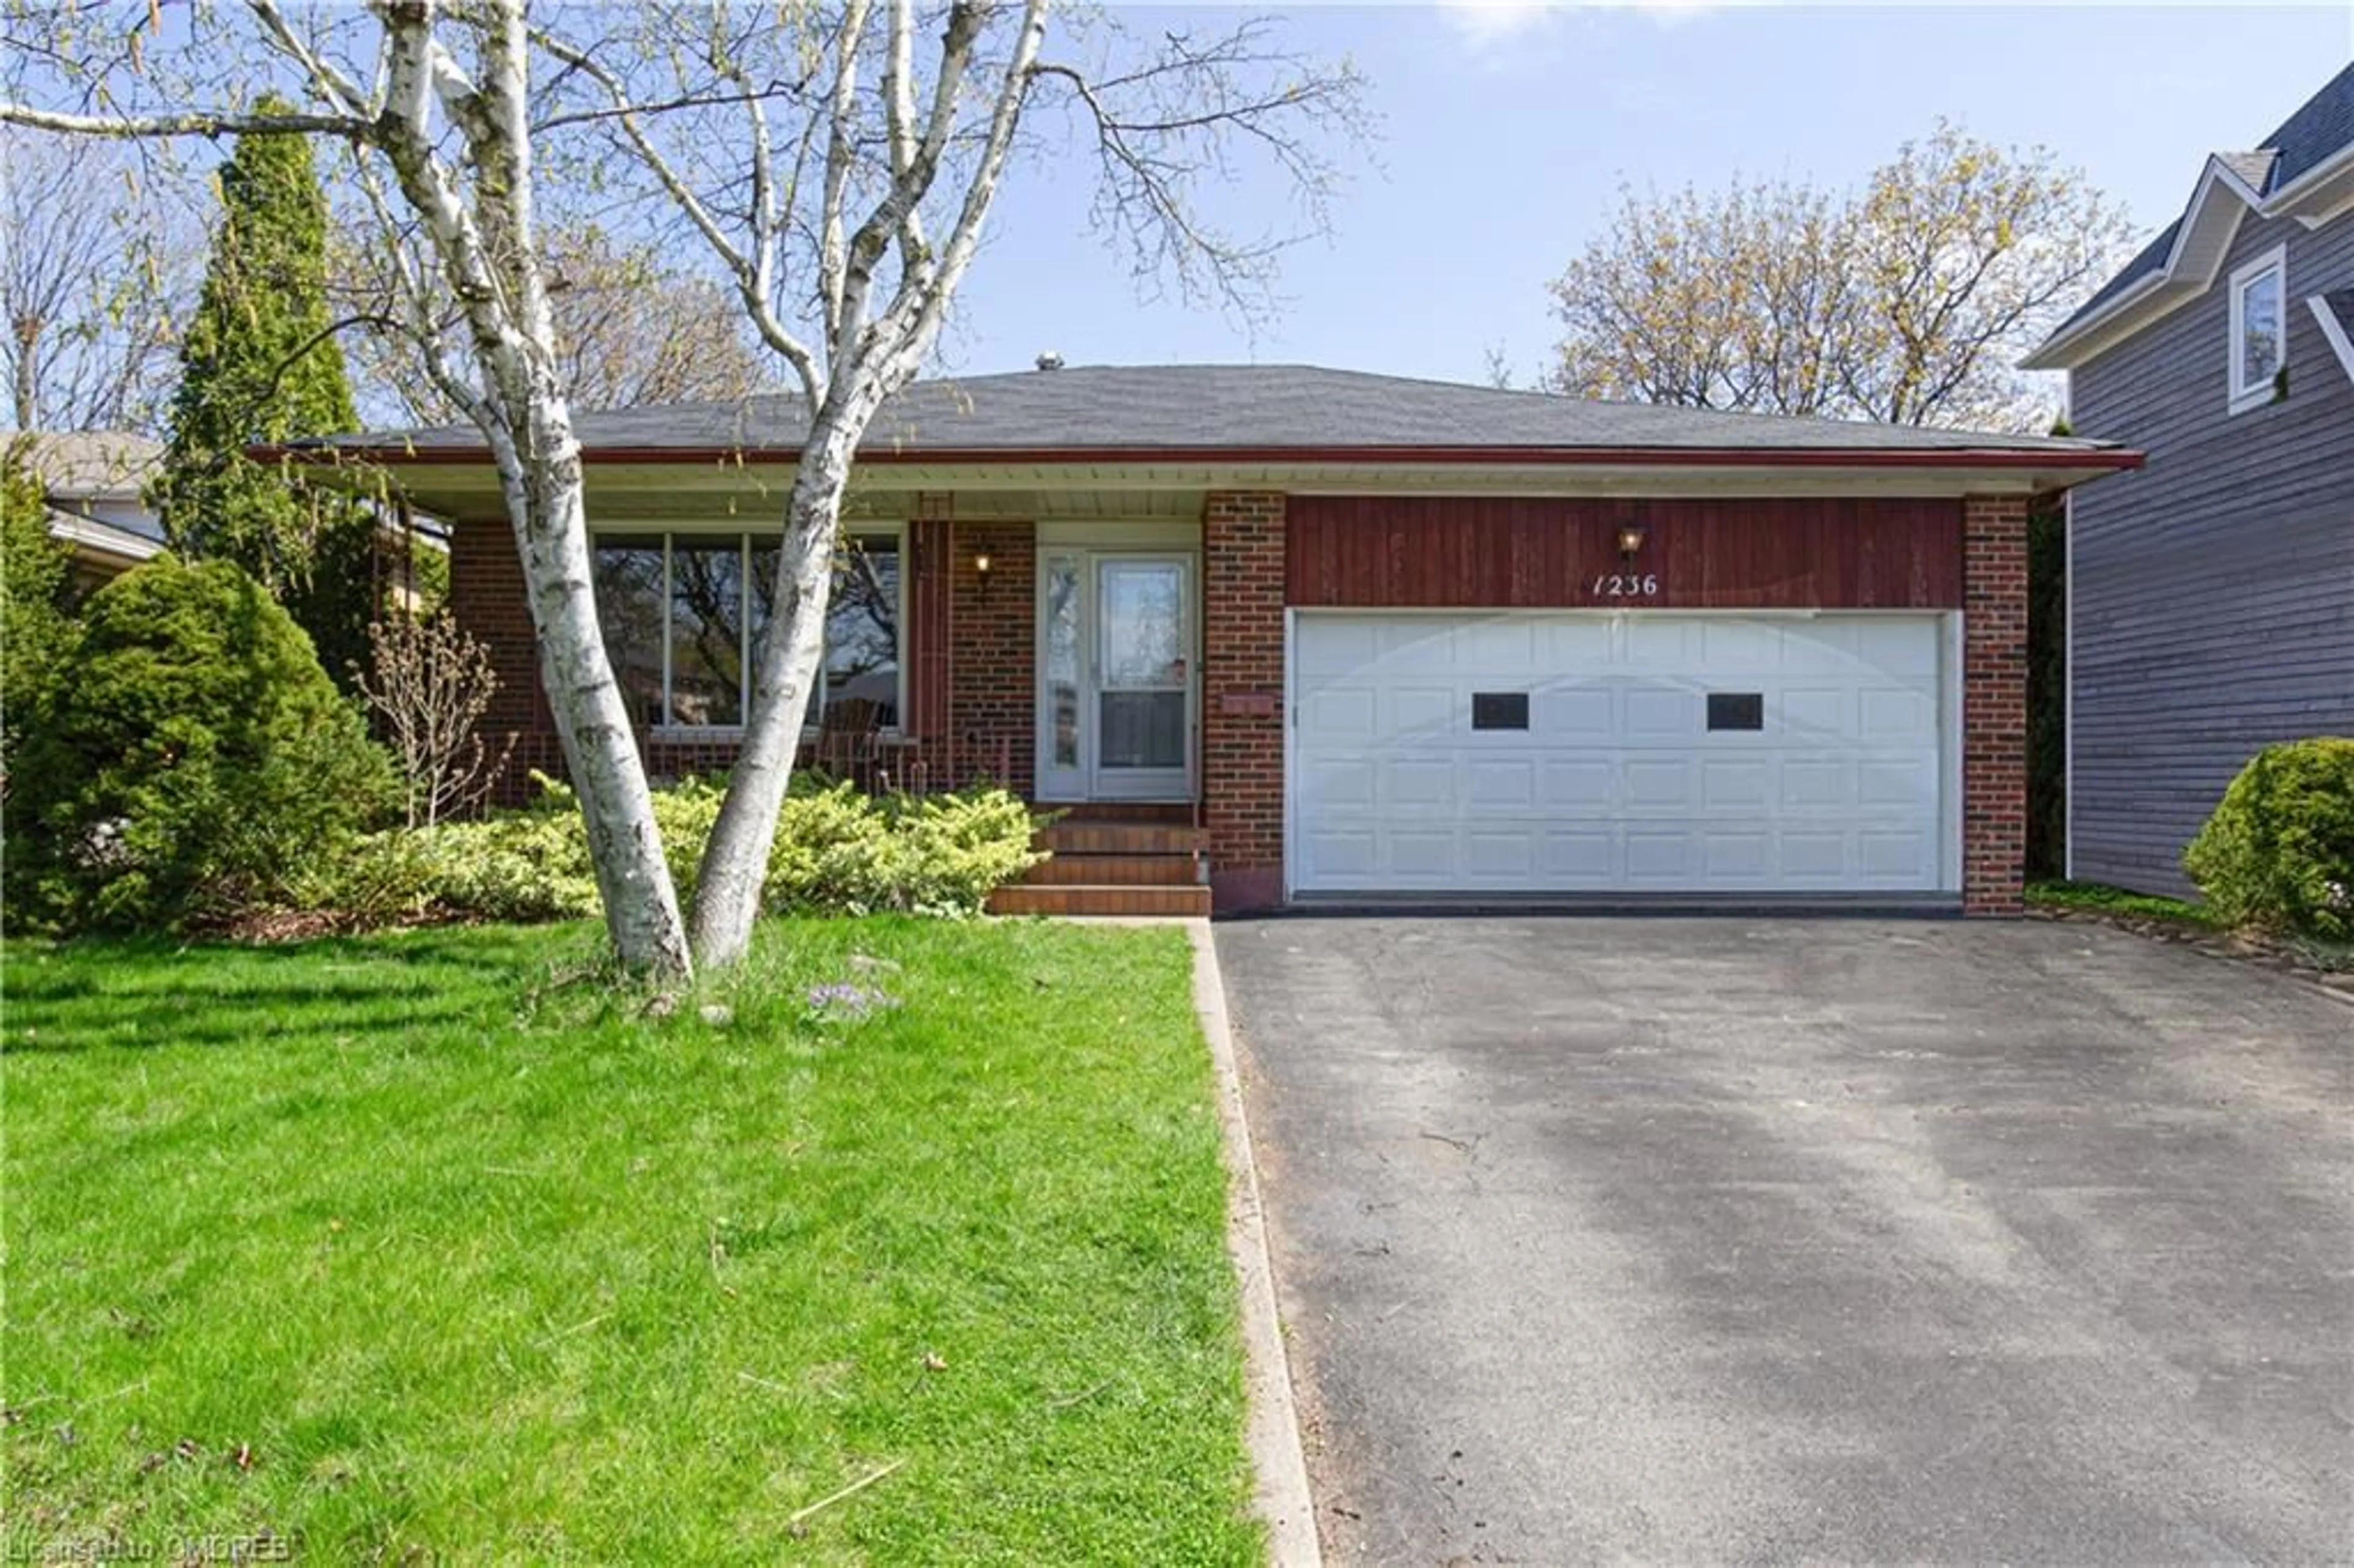 Frontside or backside of a home for 1236 Wood Pl, Oakville Ontario L6L 2R5